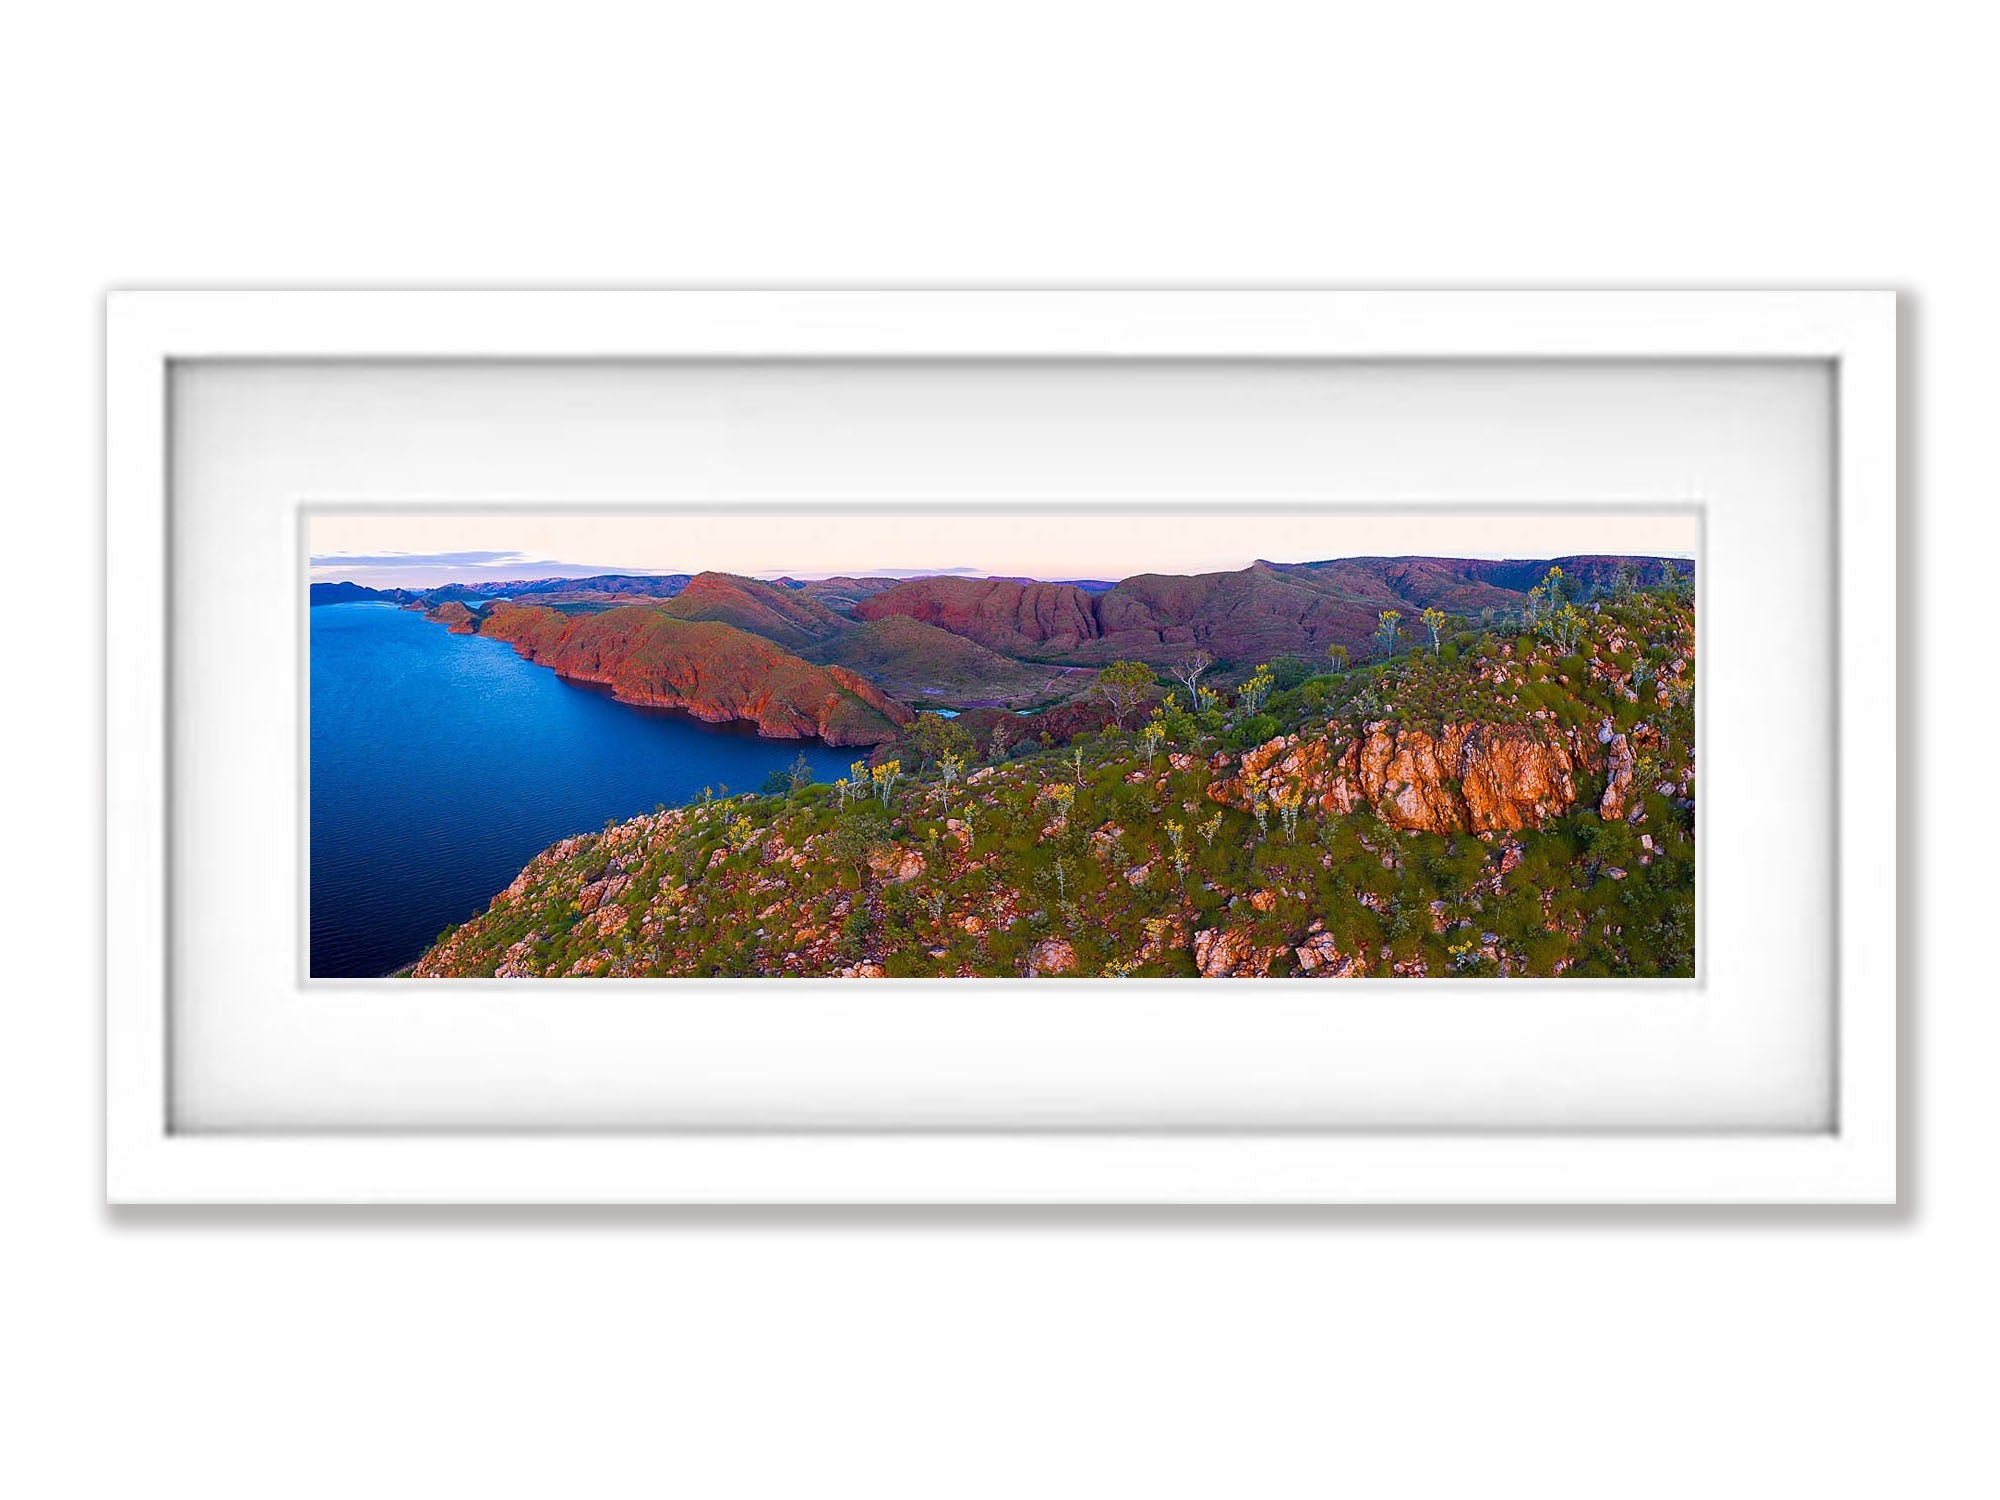 Lake Argyle #17 - The Kimberley